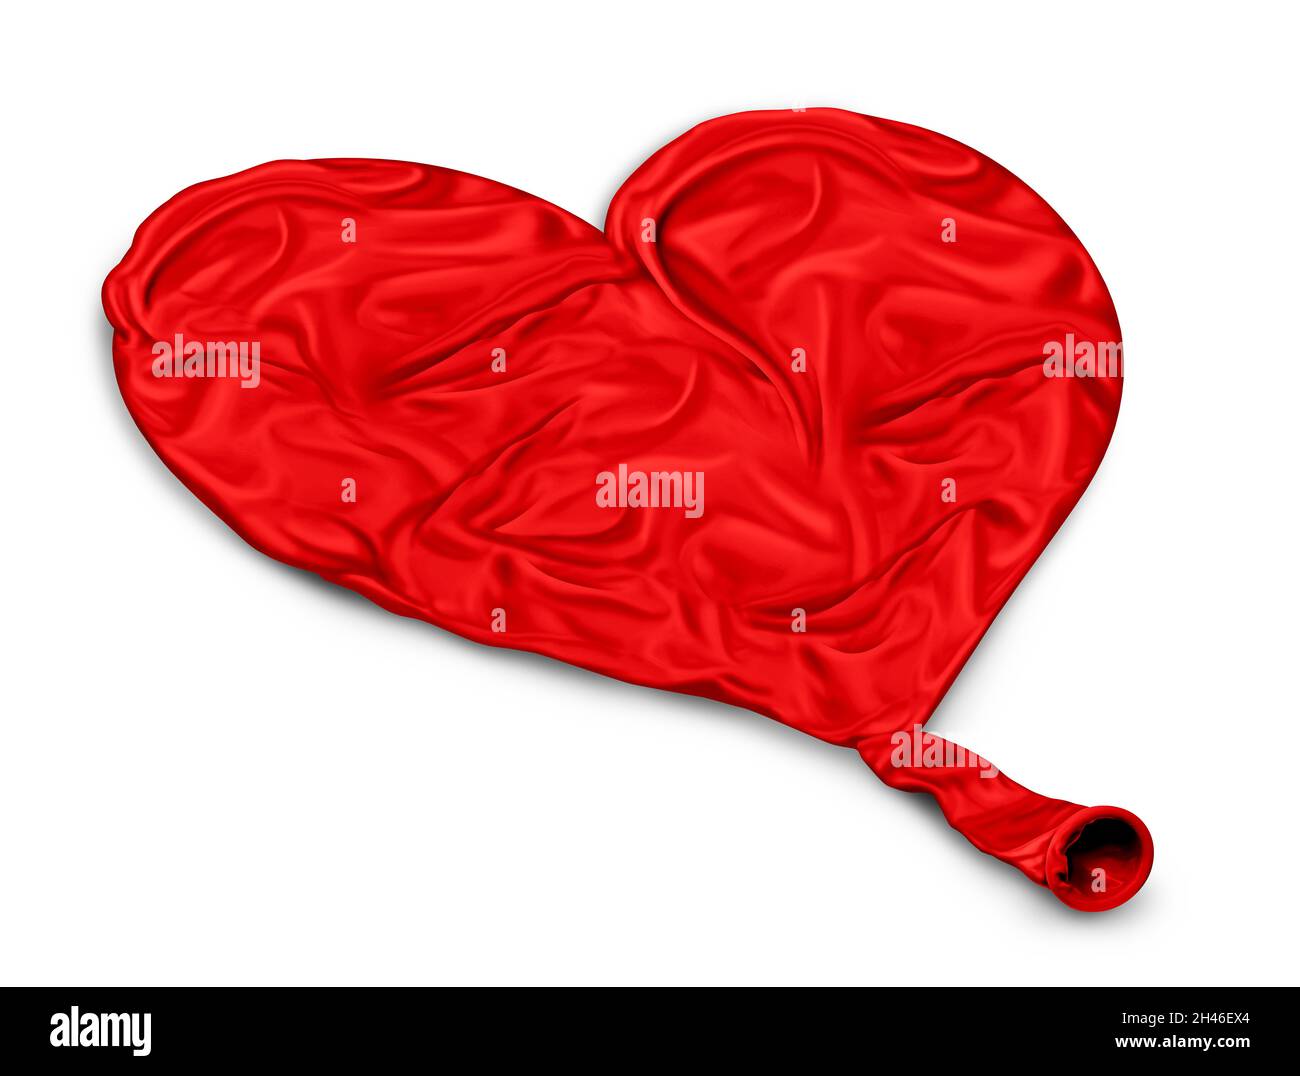 Verlorene Liebe Konzept und verlieren Romantik oder Probleme mit Herz-Erkrankungen und Herz-Kreislauf-System Problem als entflat Ballon geformt. Stockfoto